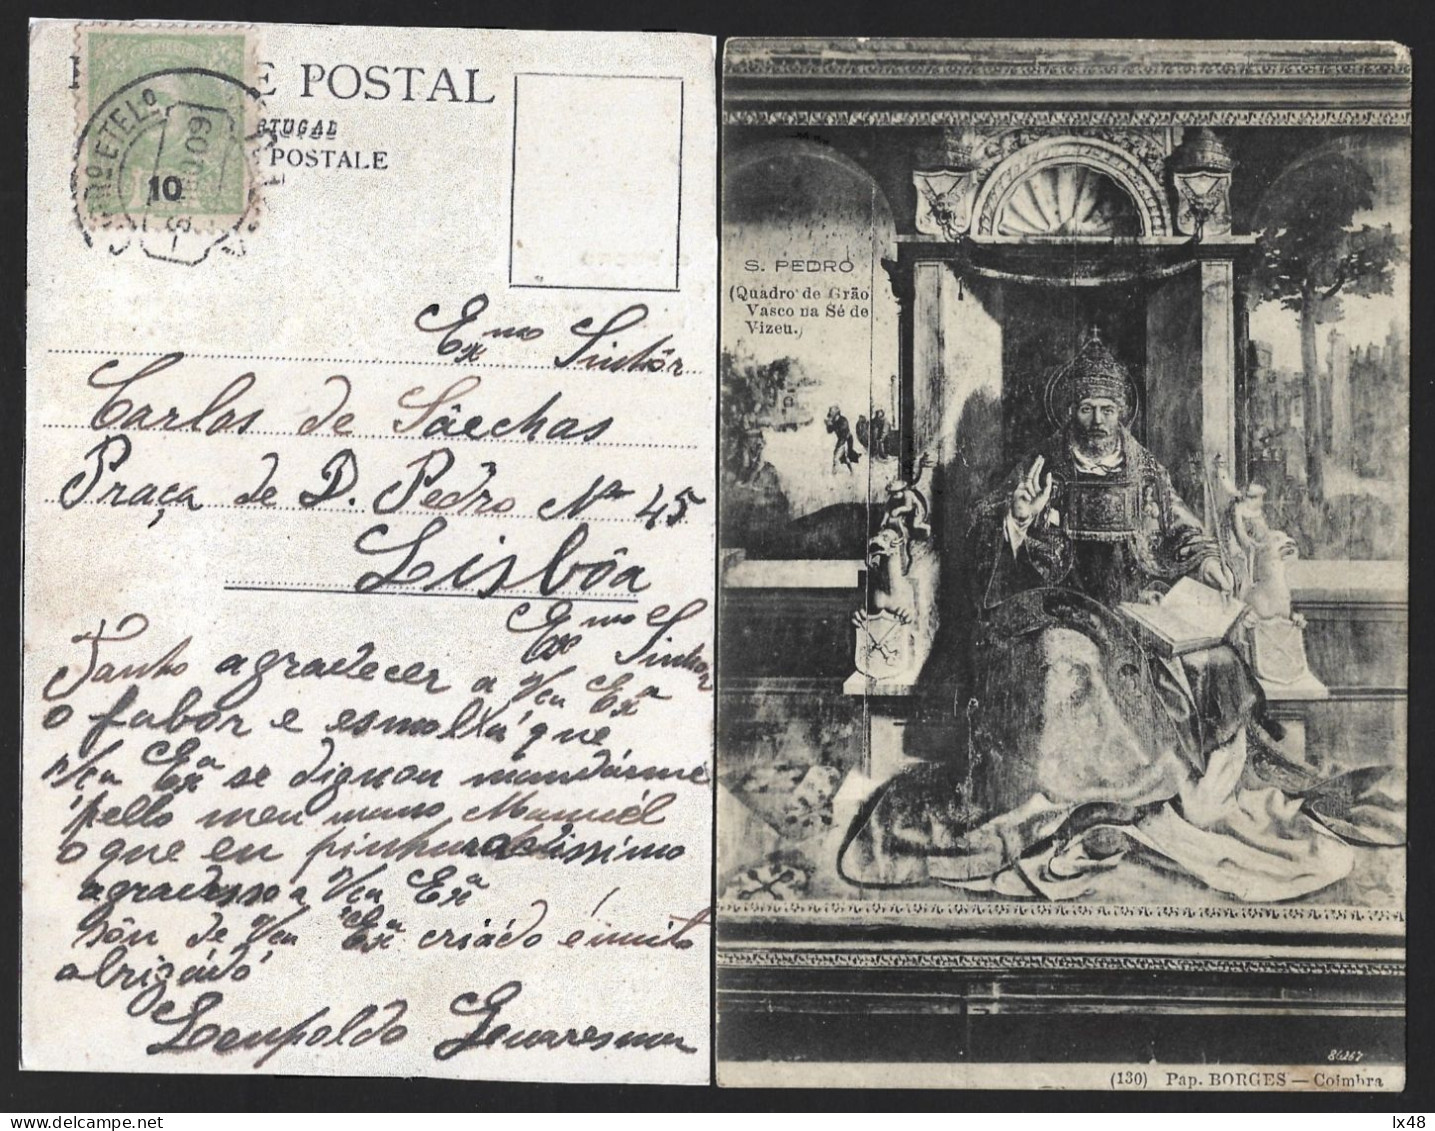 Postal Com Pintura 'S. Pedro' Quadro De Grão Vasco, Na Sé Viseu. Selo De 10 Rs D. Carlos Obliterado Em 1909 Em Viseu. - Covers & Documents